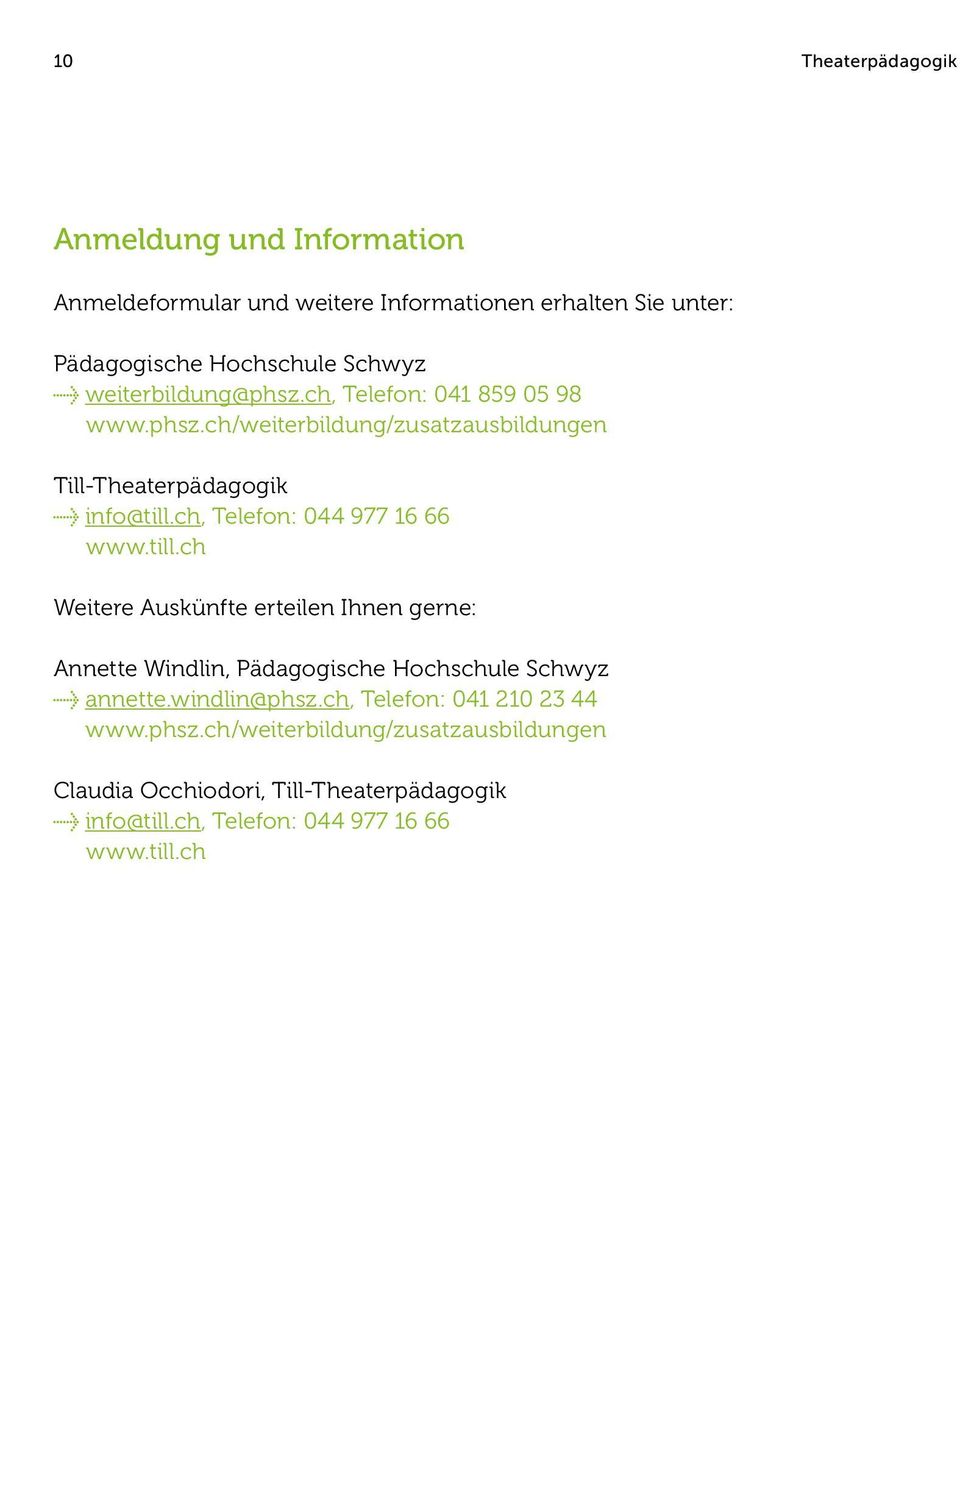 ch, Telefon: 044 977 16 66 www.till.ch Weitere Auskünfte erteilen Ihnen gerne: Annette Windlin, Pädagogische Hochschule Schwyz annette.